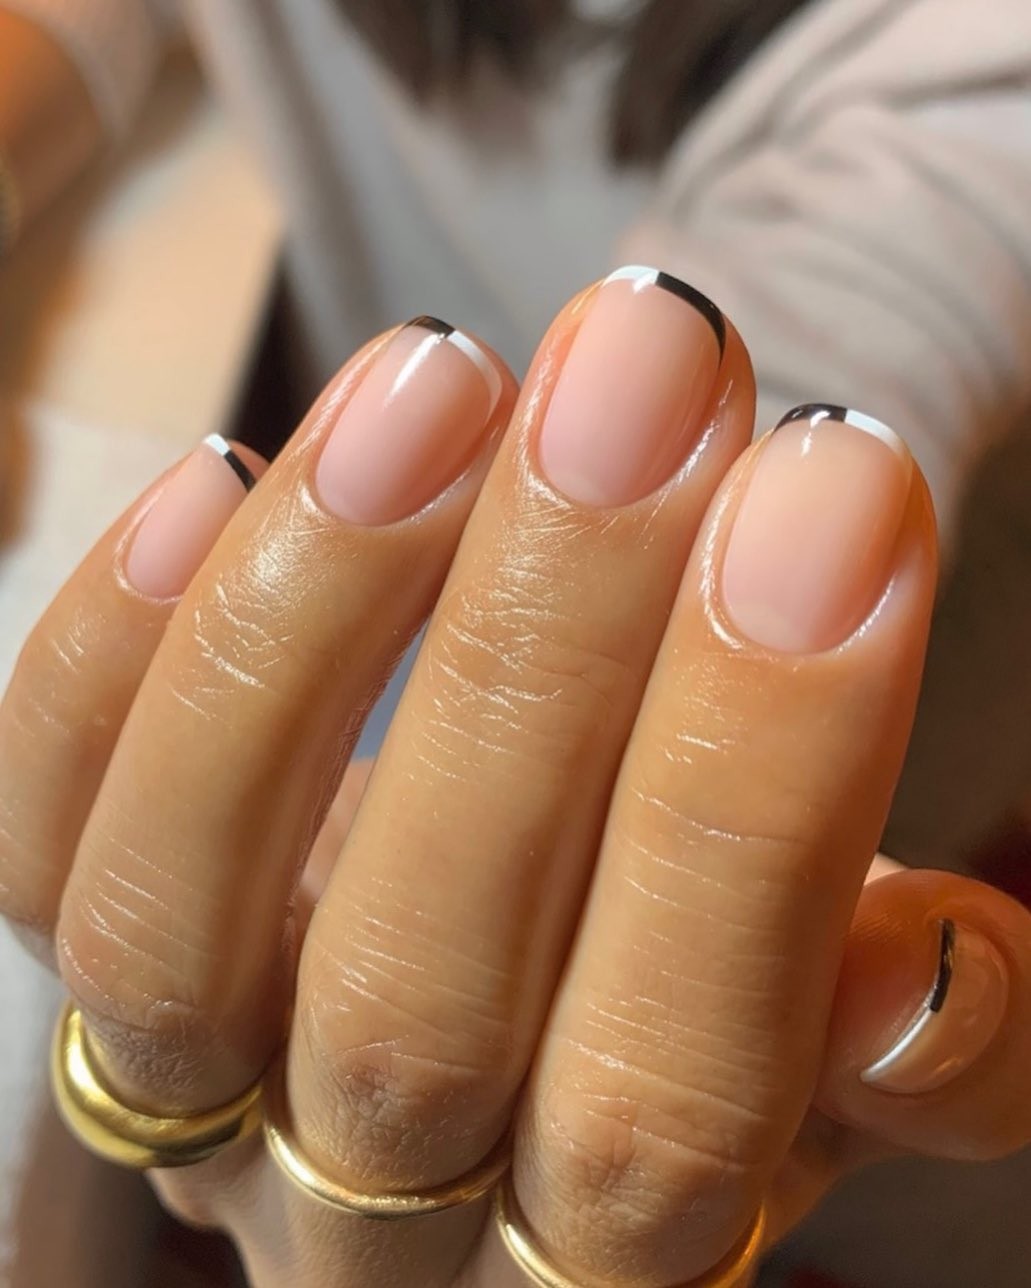 Francesinha minimalista é tendência de nail art (Foto: Reprodução/Instagram @raelondonnails)